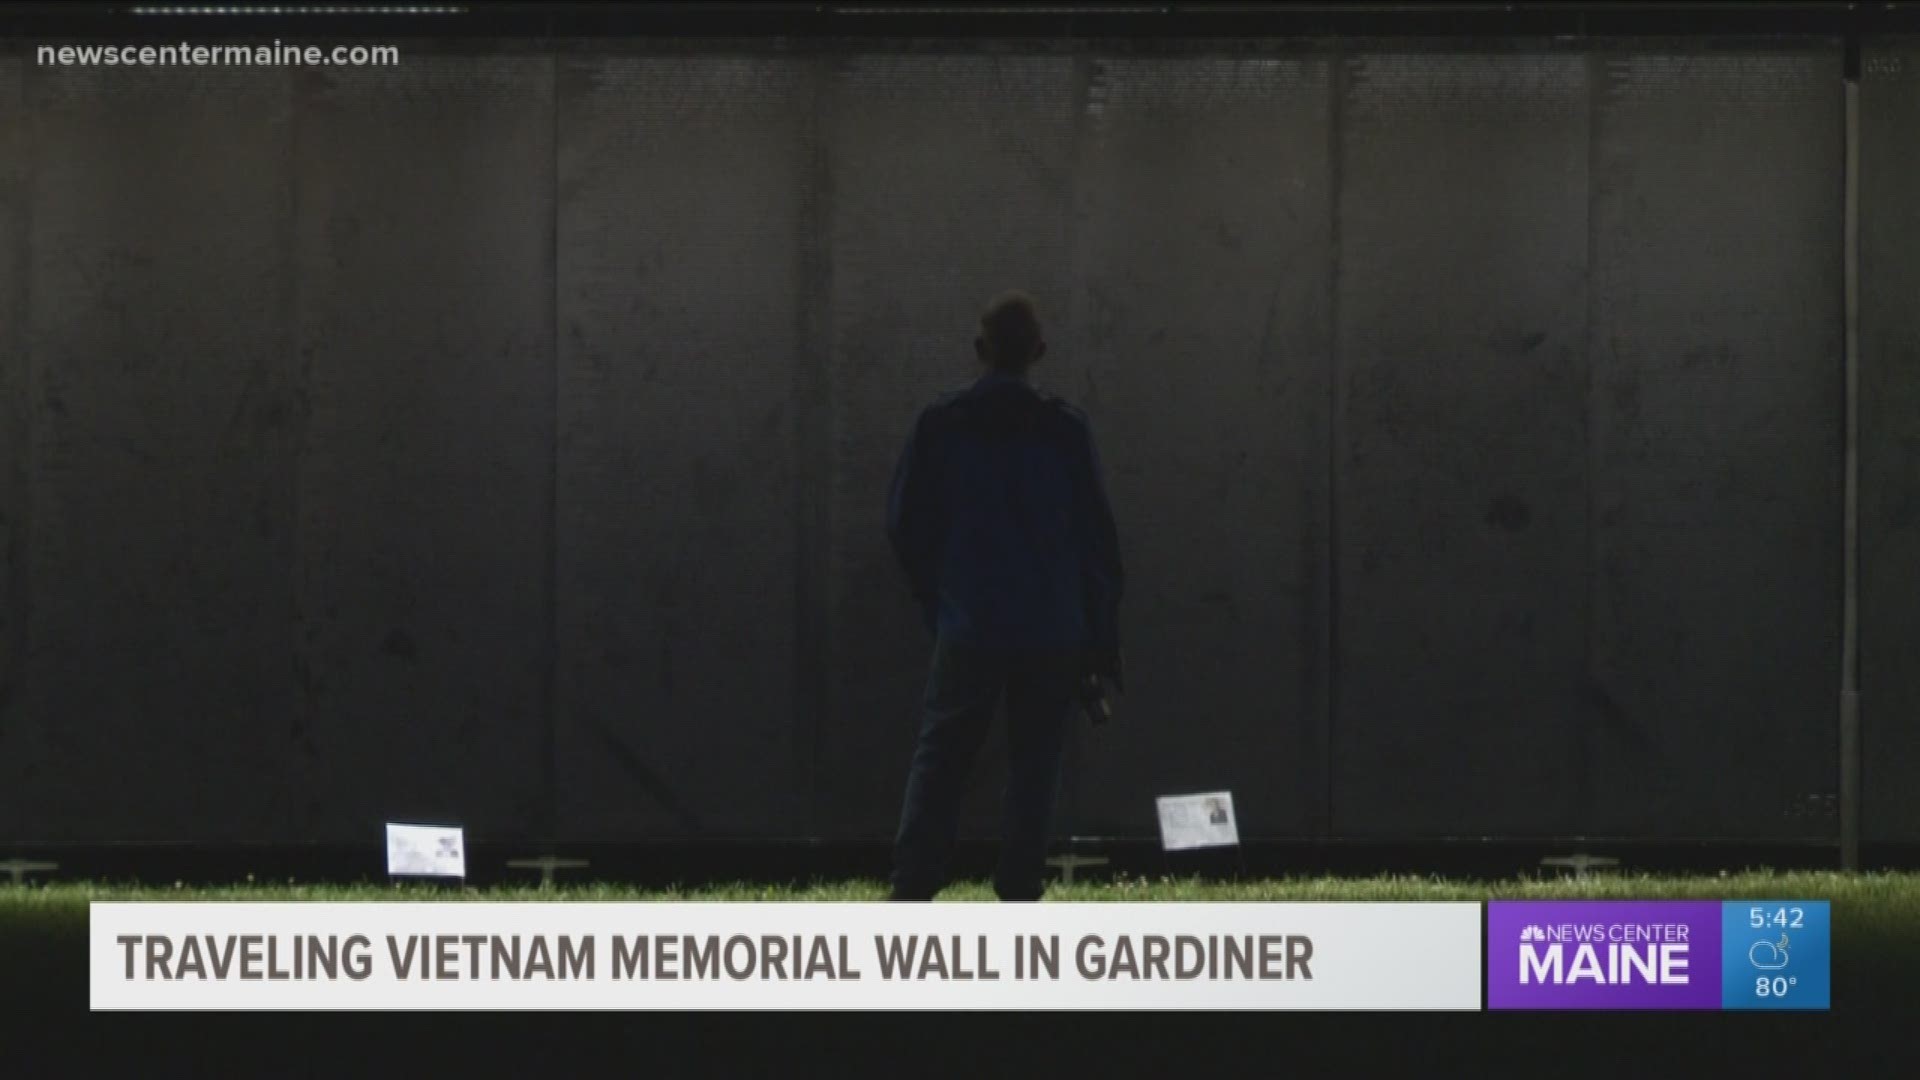 Mobile Vietnam Wall in Gardiner 